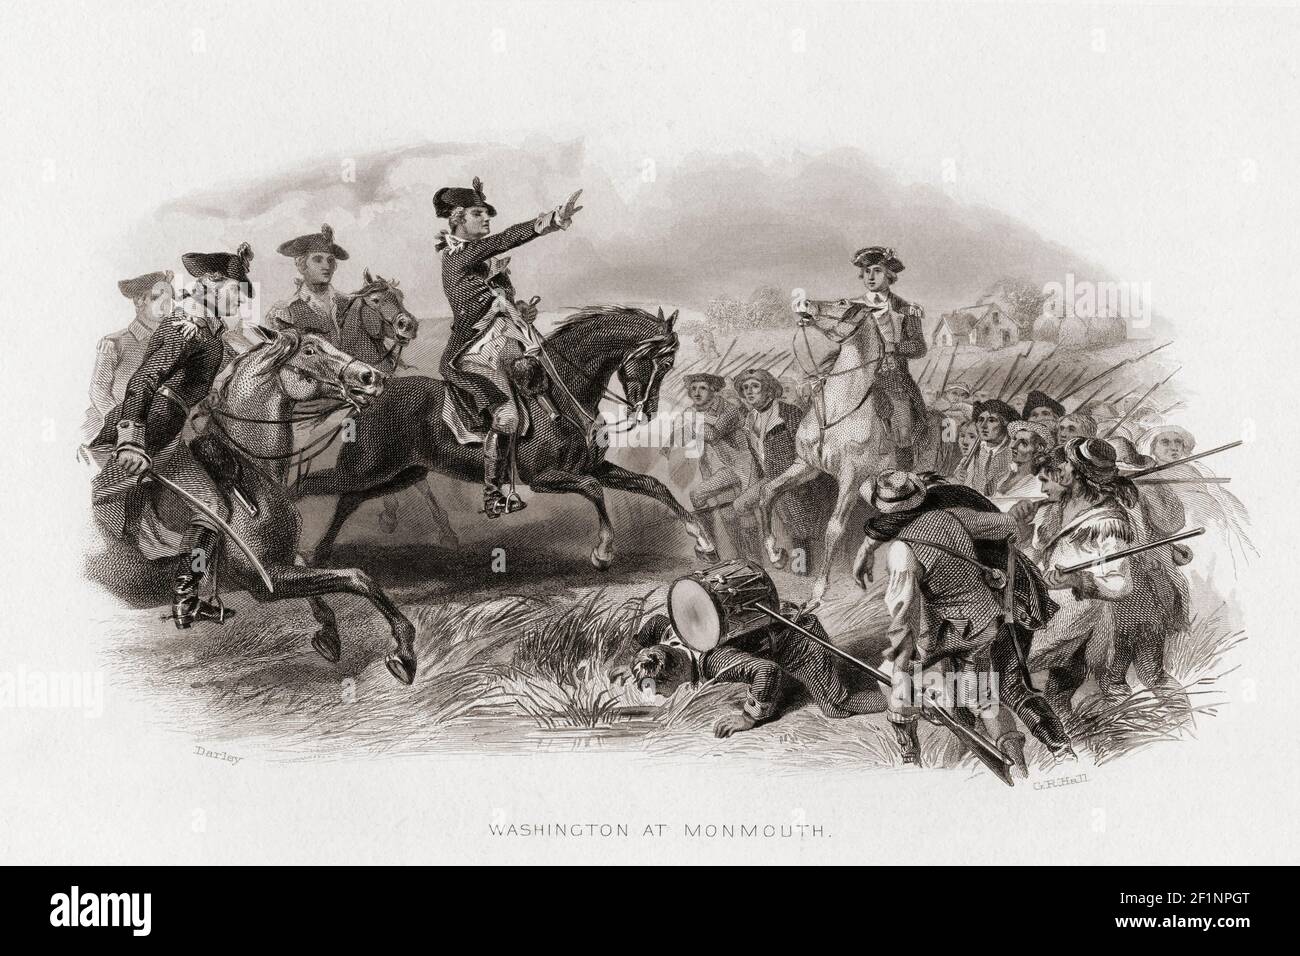 George Washington bei der Schlacht von Monmouth, auch bekannt als die Schlacht von Monmouth Court House, 28. Juni 1778. Nach einem Stich von G.R. aus dem Jahr 1858 Halle aus einer Arbeit von Felix Octavius Carr Darley. Stockfoto